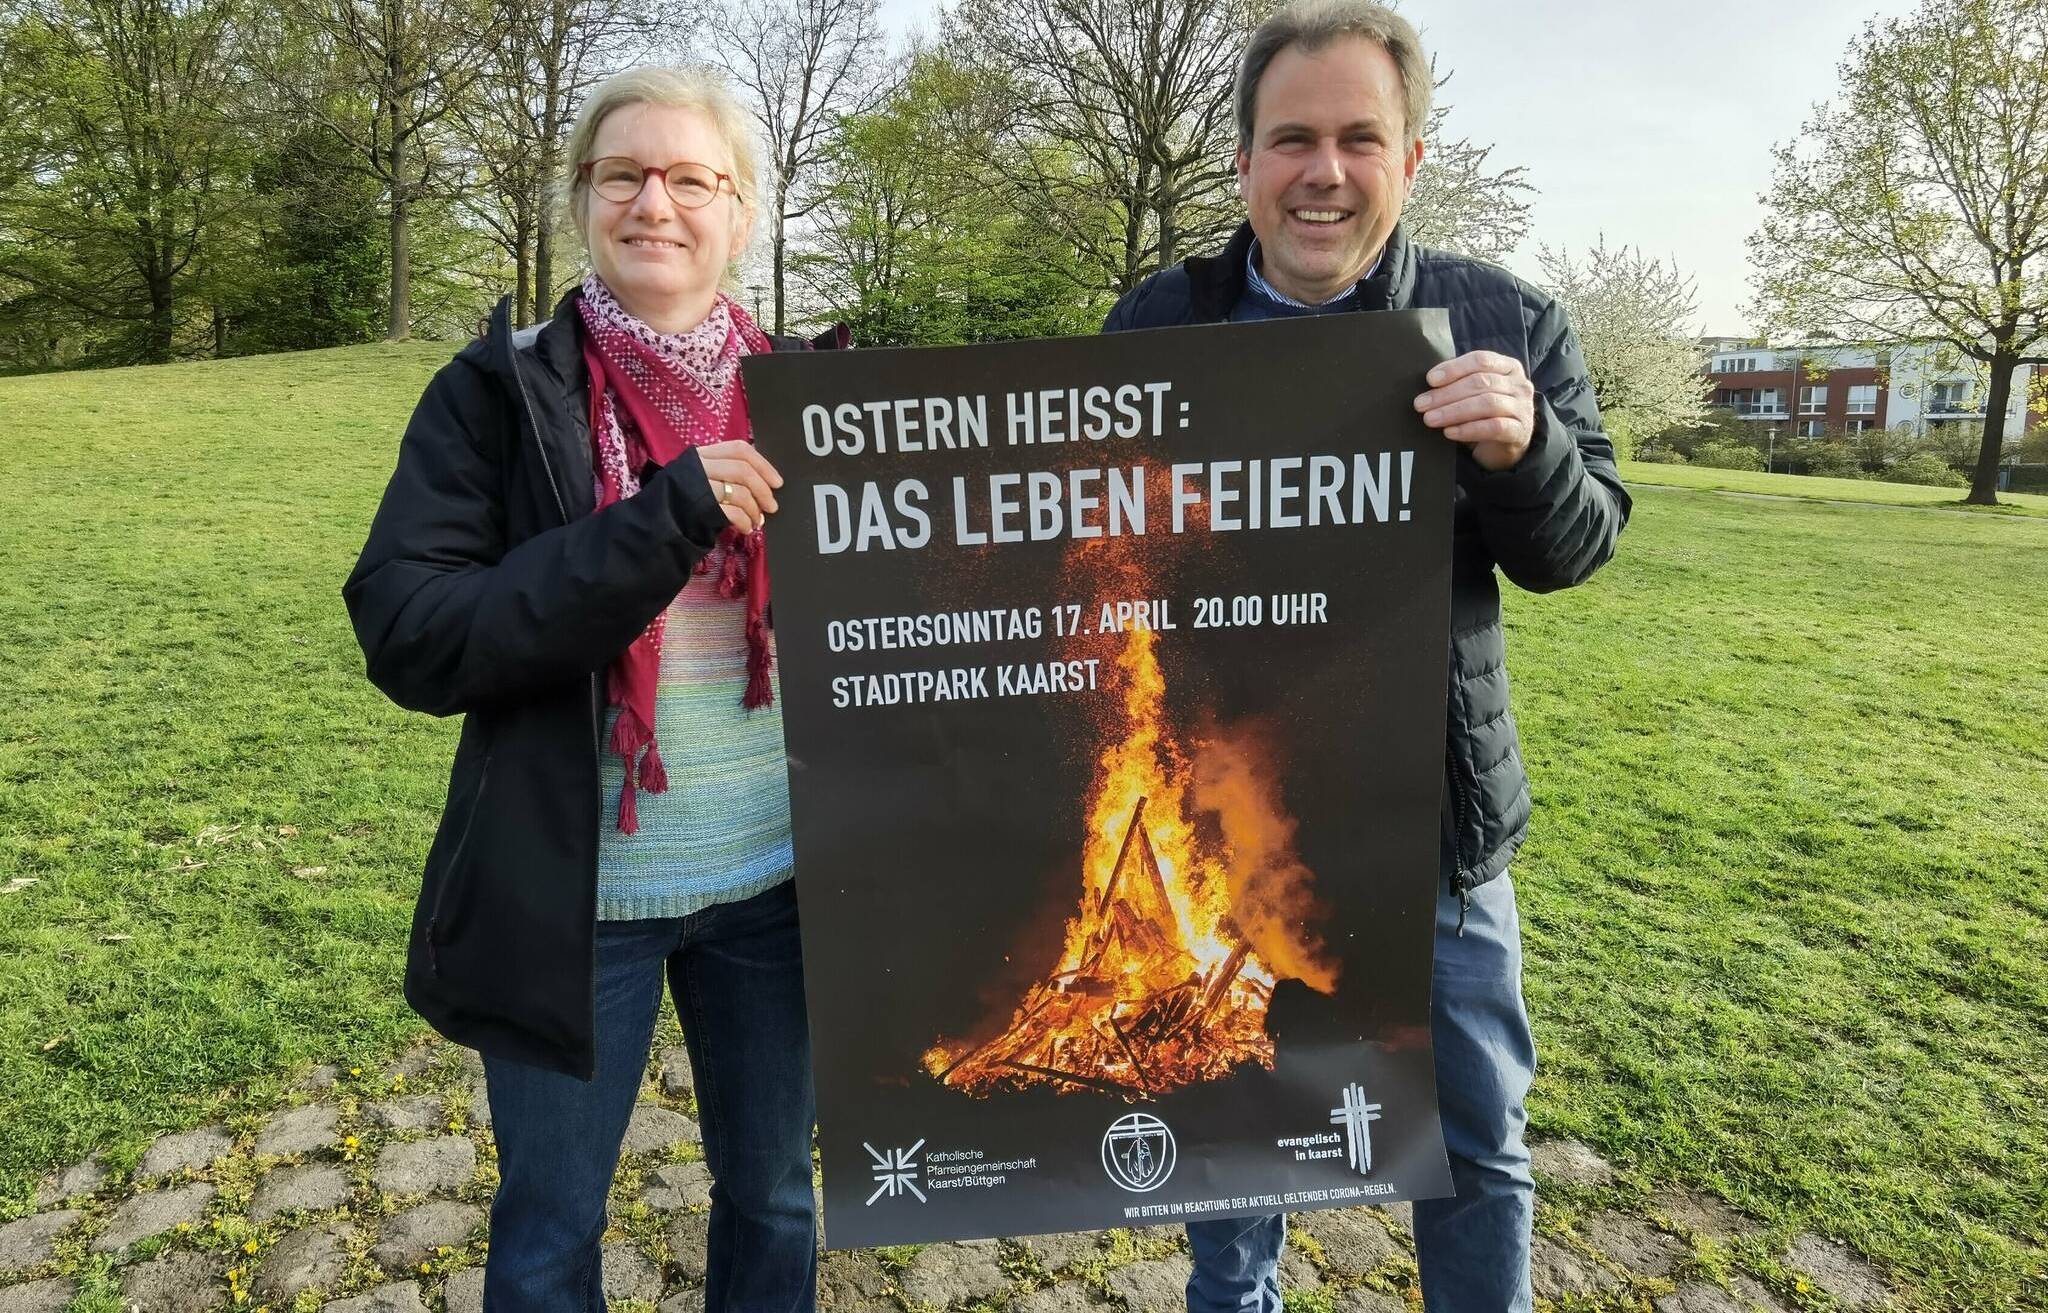  Pastoralreferentin Brigitta Berweiler und Pfarrer Ralf Büchting werben für das Osterfeuer am Ostersonntag im Stadtpark. Mit dem Gottesdienst soll das Leben gefeiert werden.  